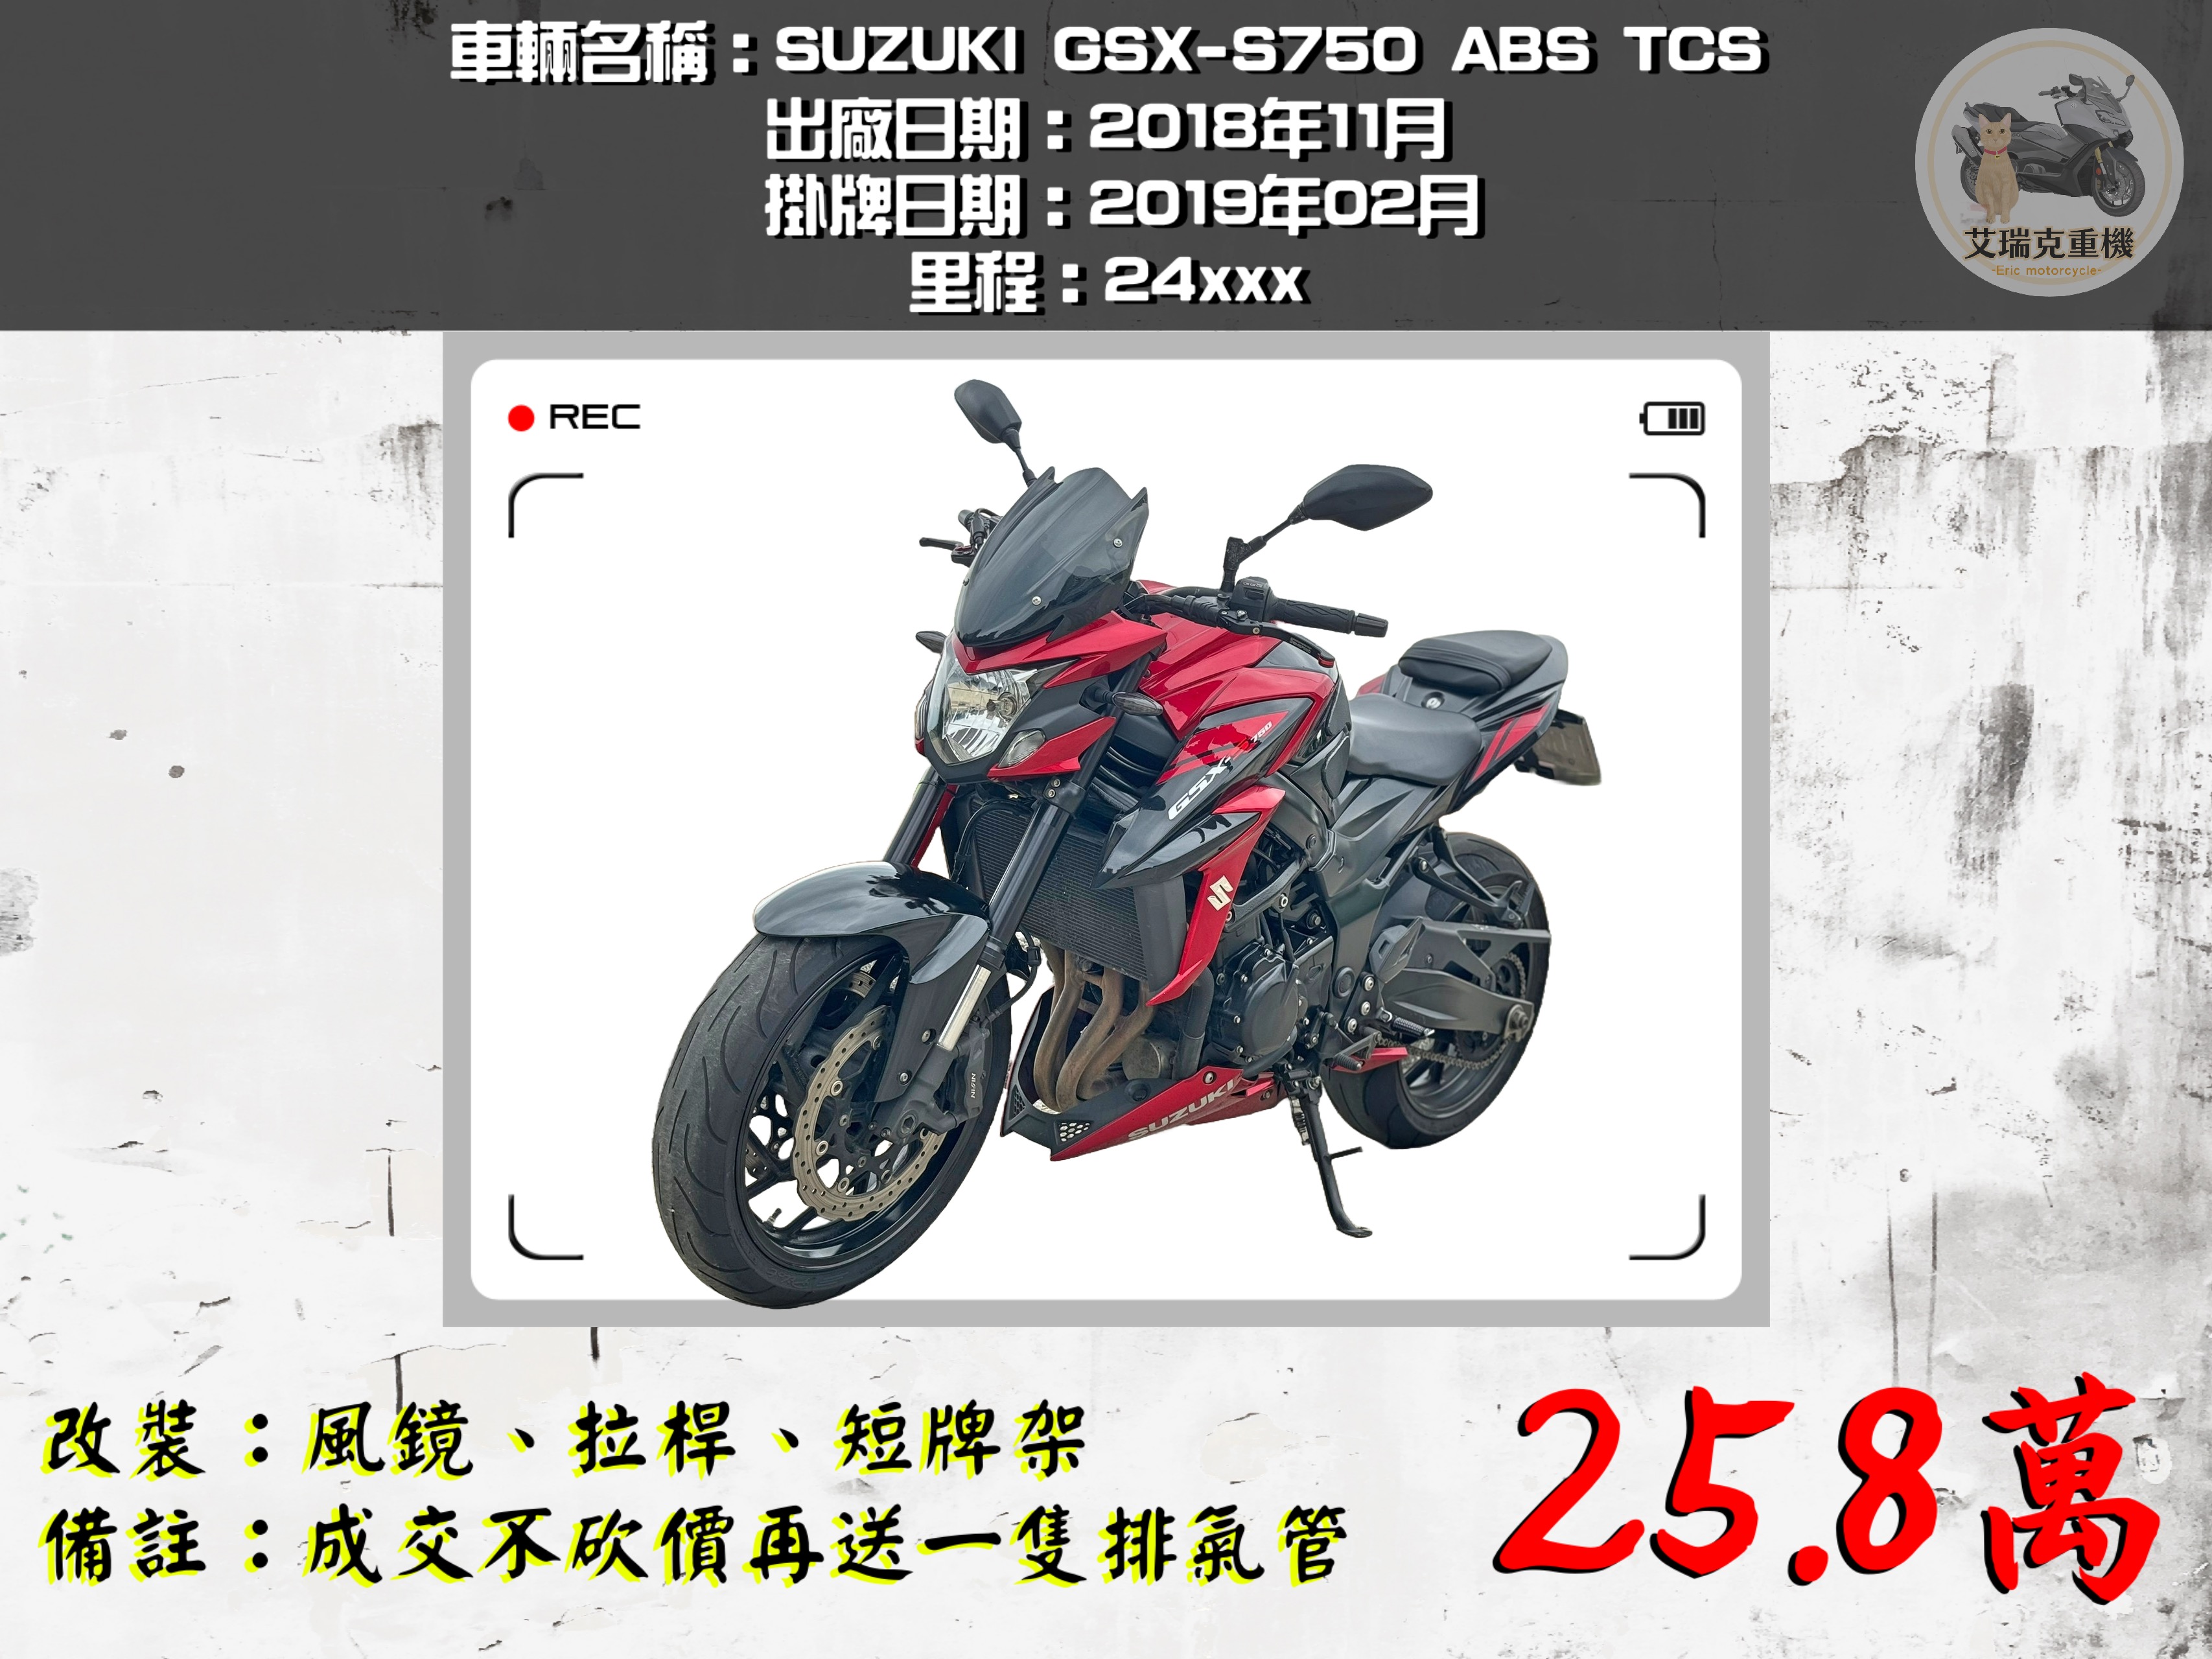 SUZUKI GSX-S 750 - 中古/二手車出售中 SUZUKI GSX-S750 ABS TCS  | 艾瑞克重機